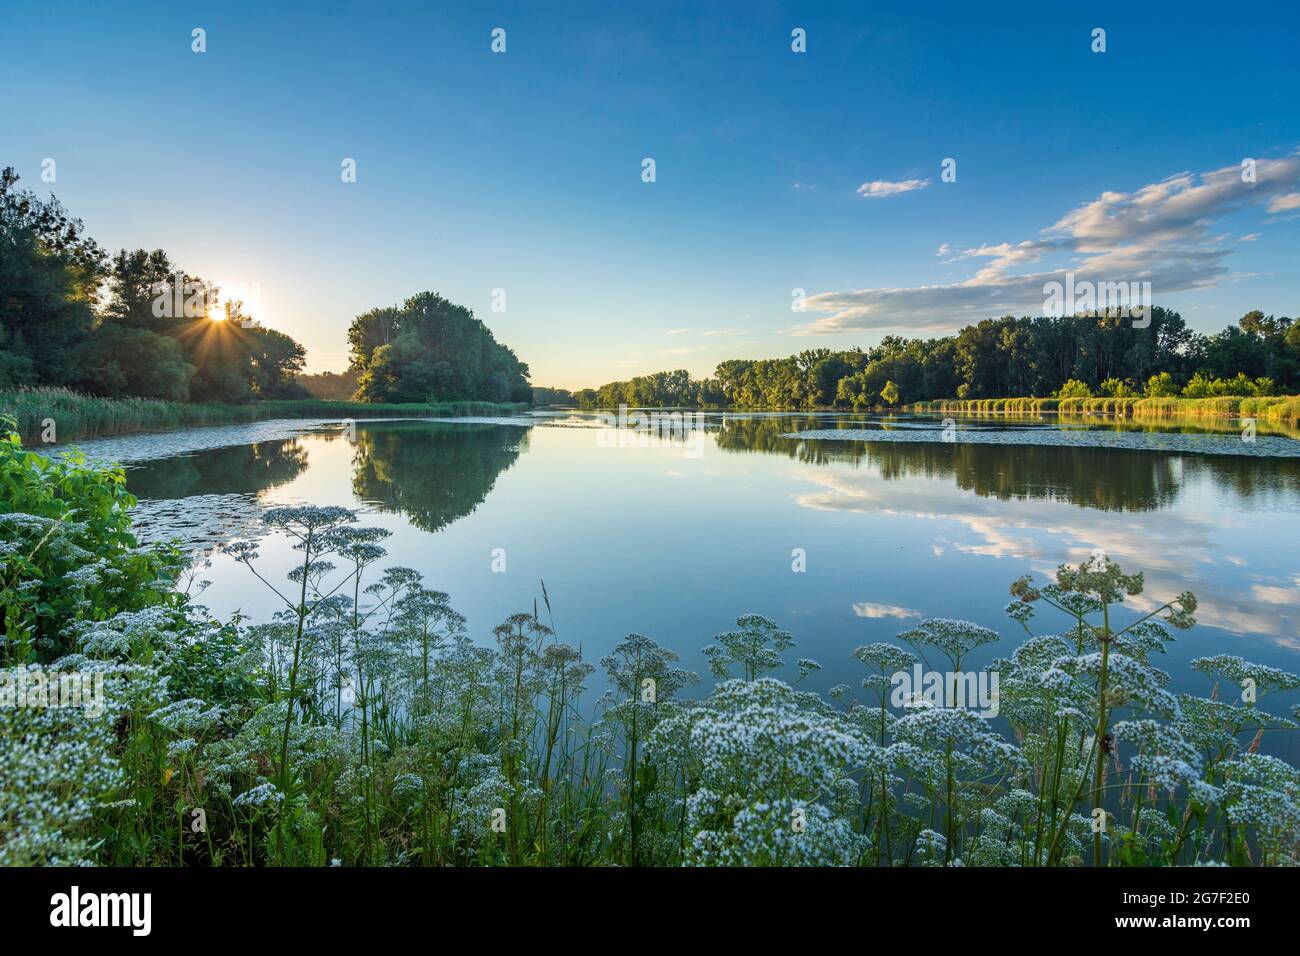 Wien, Vienne: Coucher de soleil sur le lac de l'arbalète Kühwörter Wasser dans la plaine inondable Lobau, partie du parc national Donau-Auen (parc national du Danube-Auen), plante Schafgarb Banque D'Images